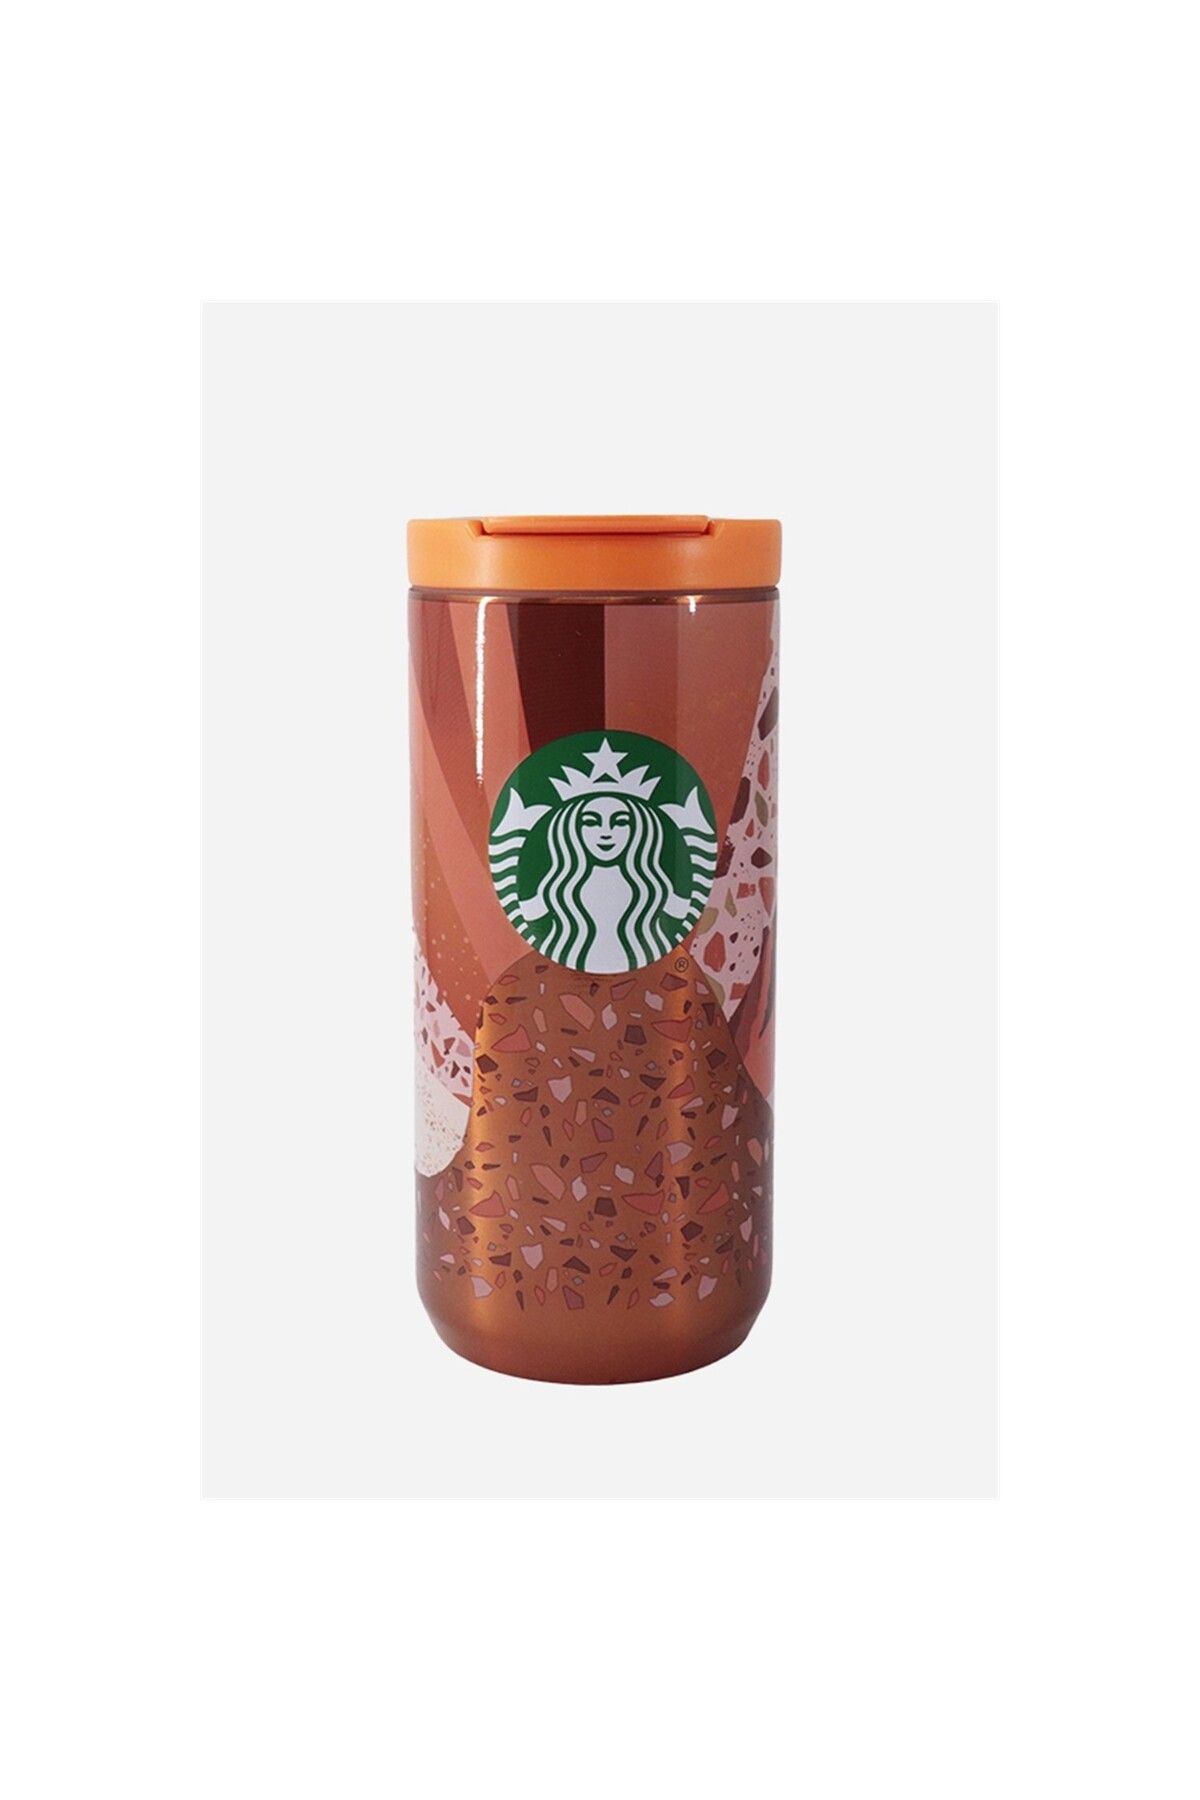 Starbucks Orange Tiger Stainless Steel Thermos Tumbler – Ann Ann